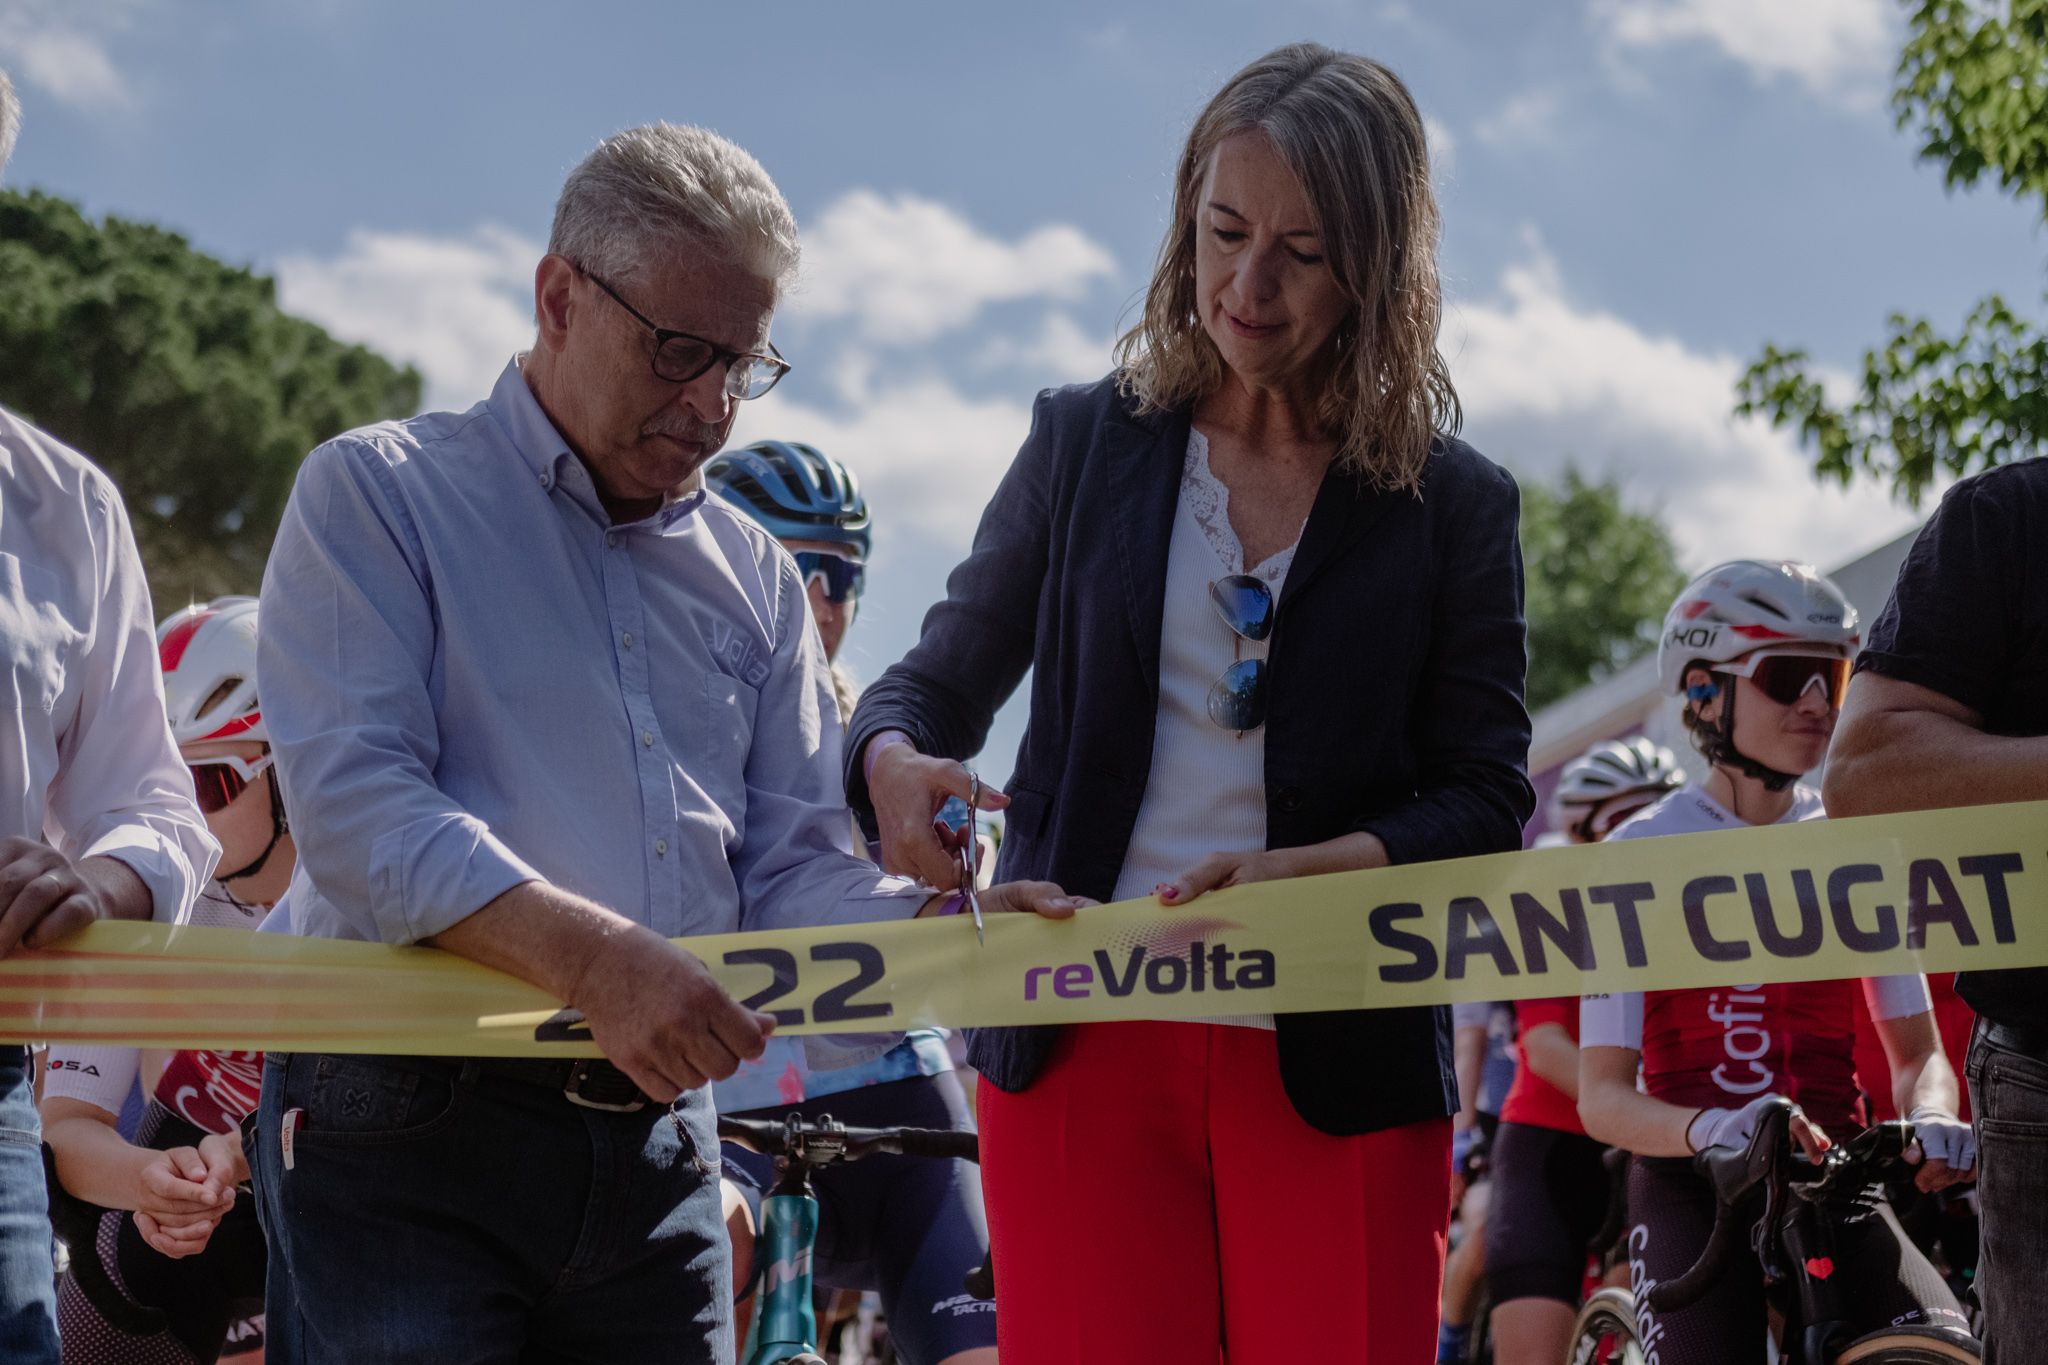 L'alcaldesa trenca la cinta de la sortida de la reVolta de Sant Cugat 2022. FOTO: Ale Gómez